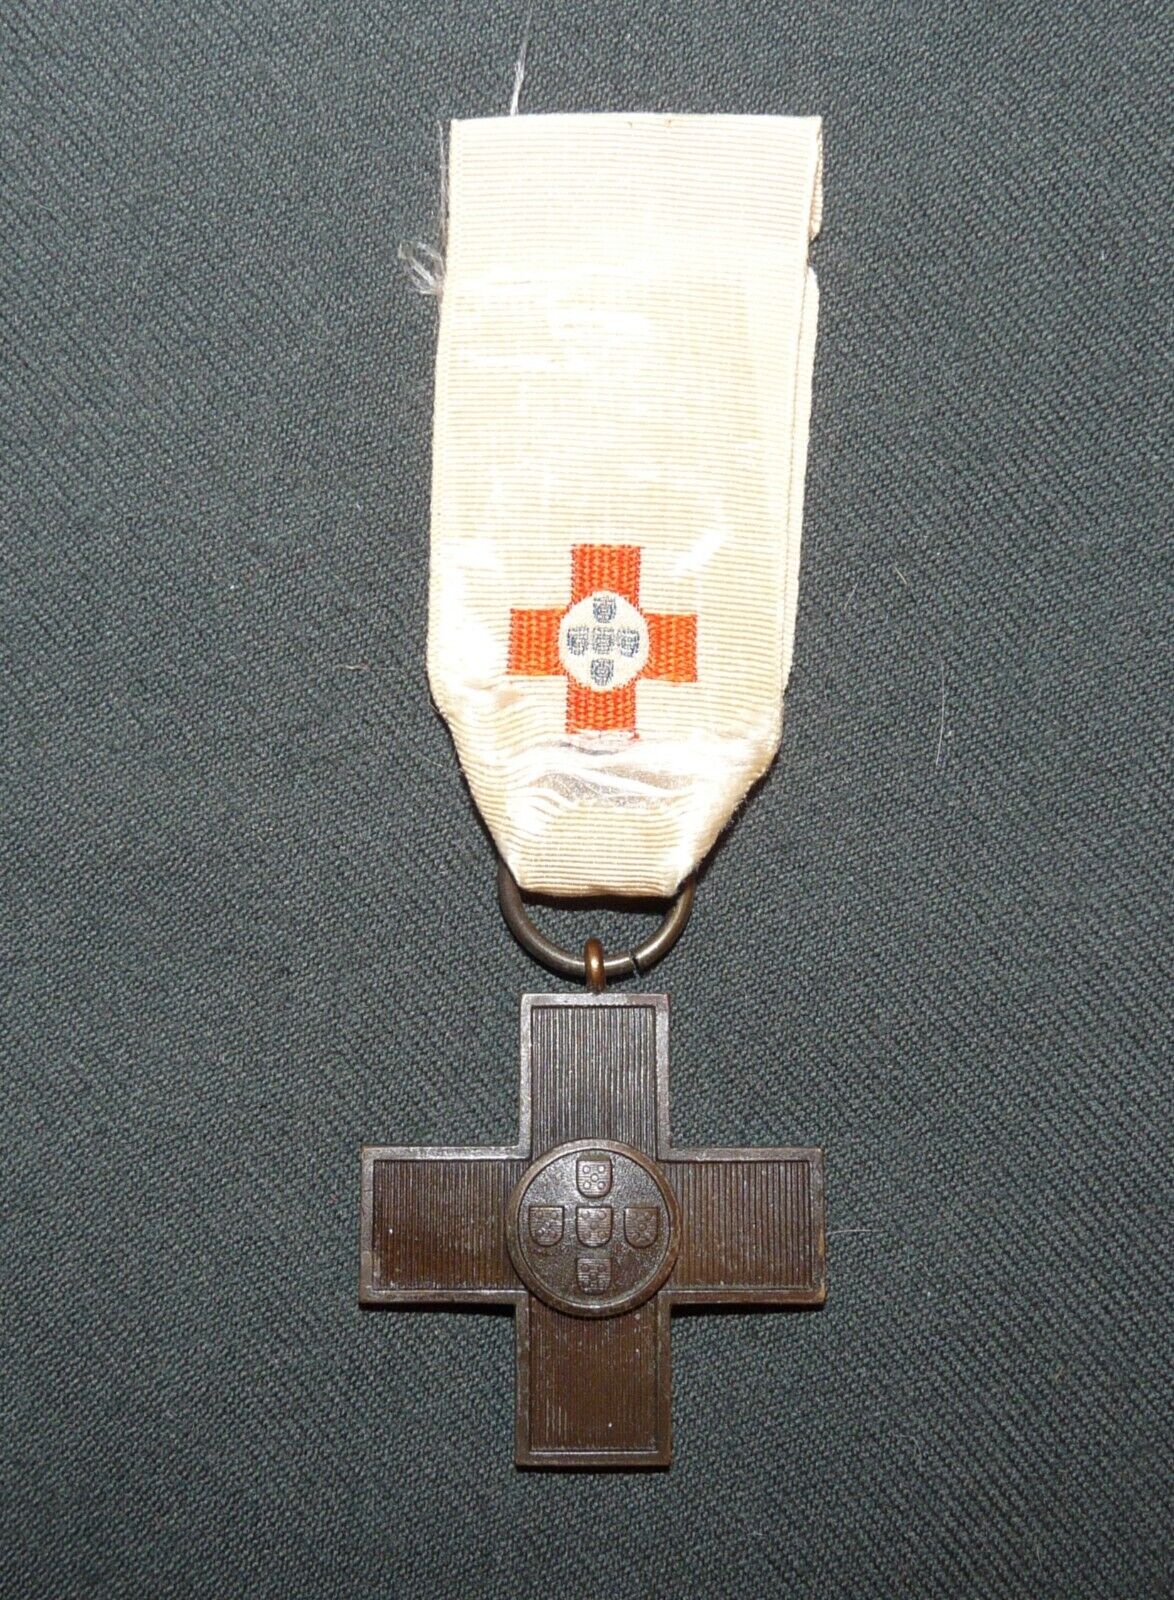 Original Vintage Portugal Portuguese Red Cross Medal 1865-1925